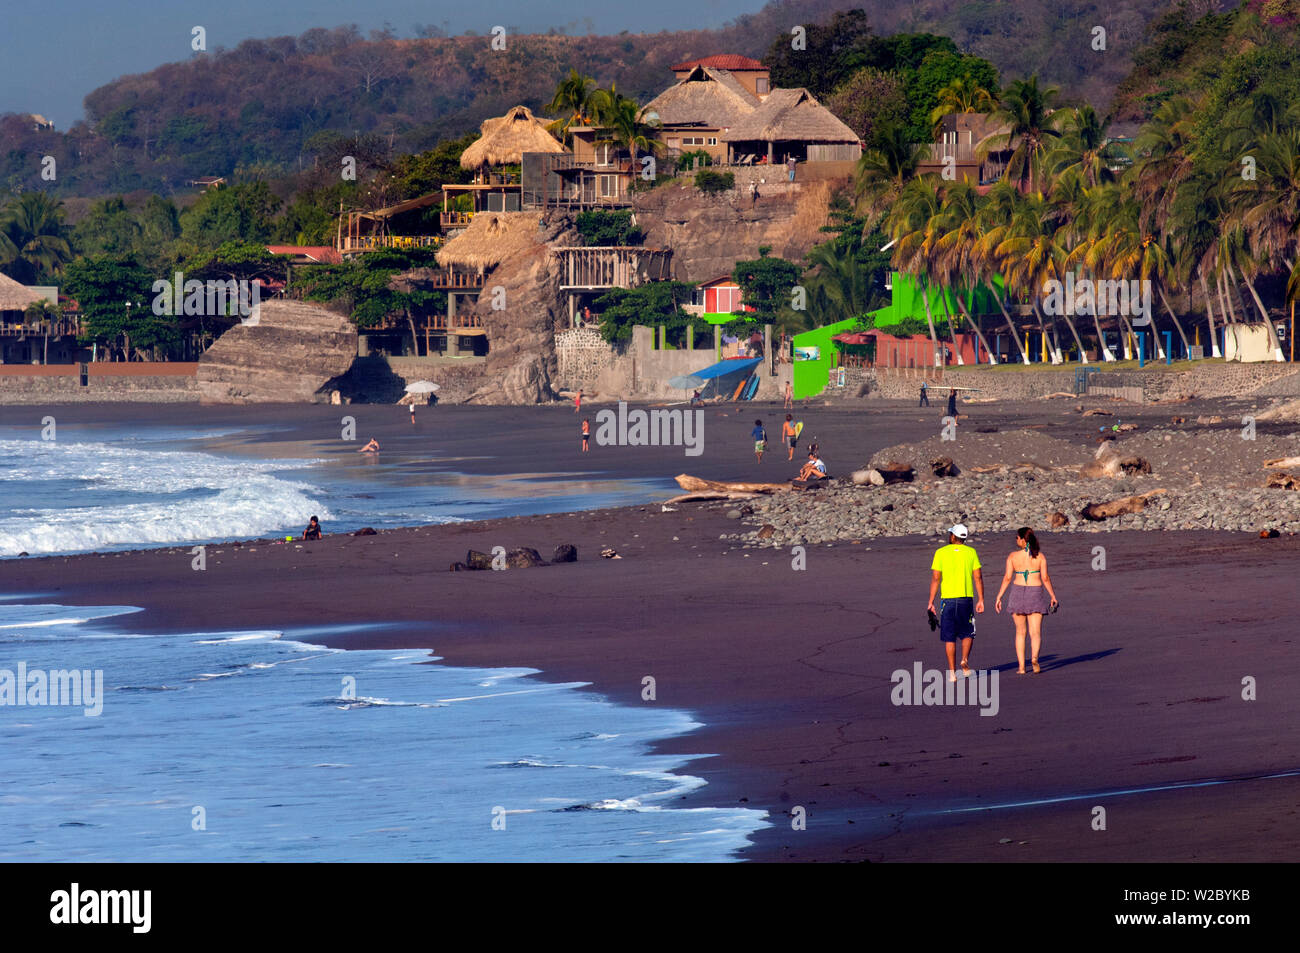 Playa El Tunco, El Salvador, Pacific Ocean Beach, Popular With Surfers, Great Waves, Beach Resorts Stock Photo